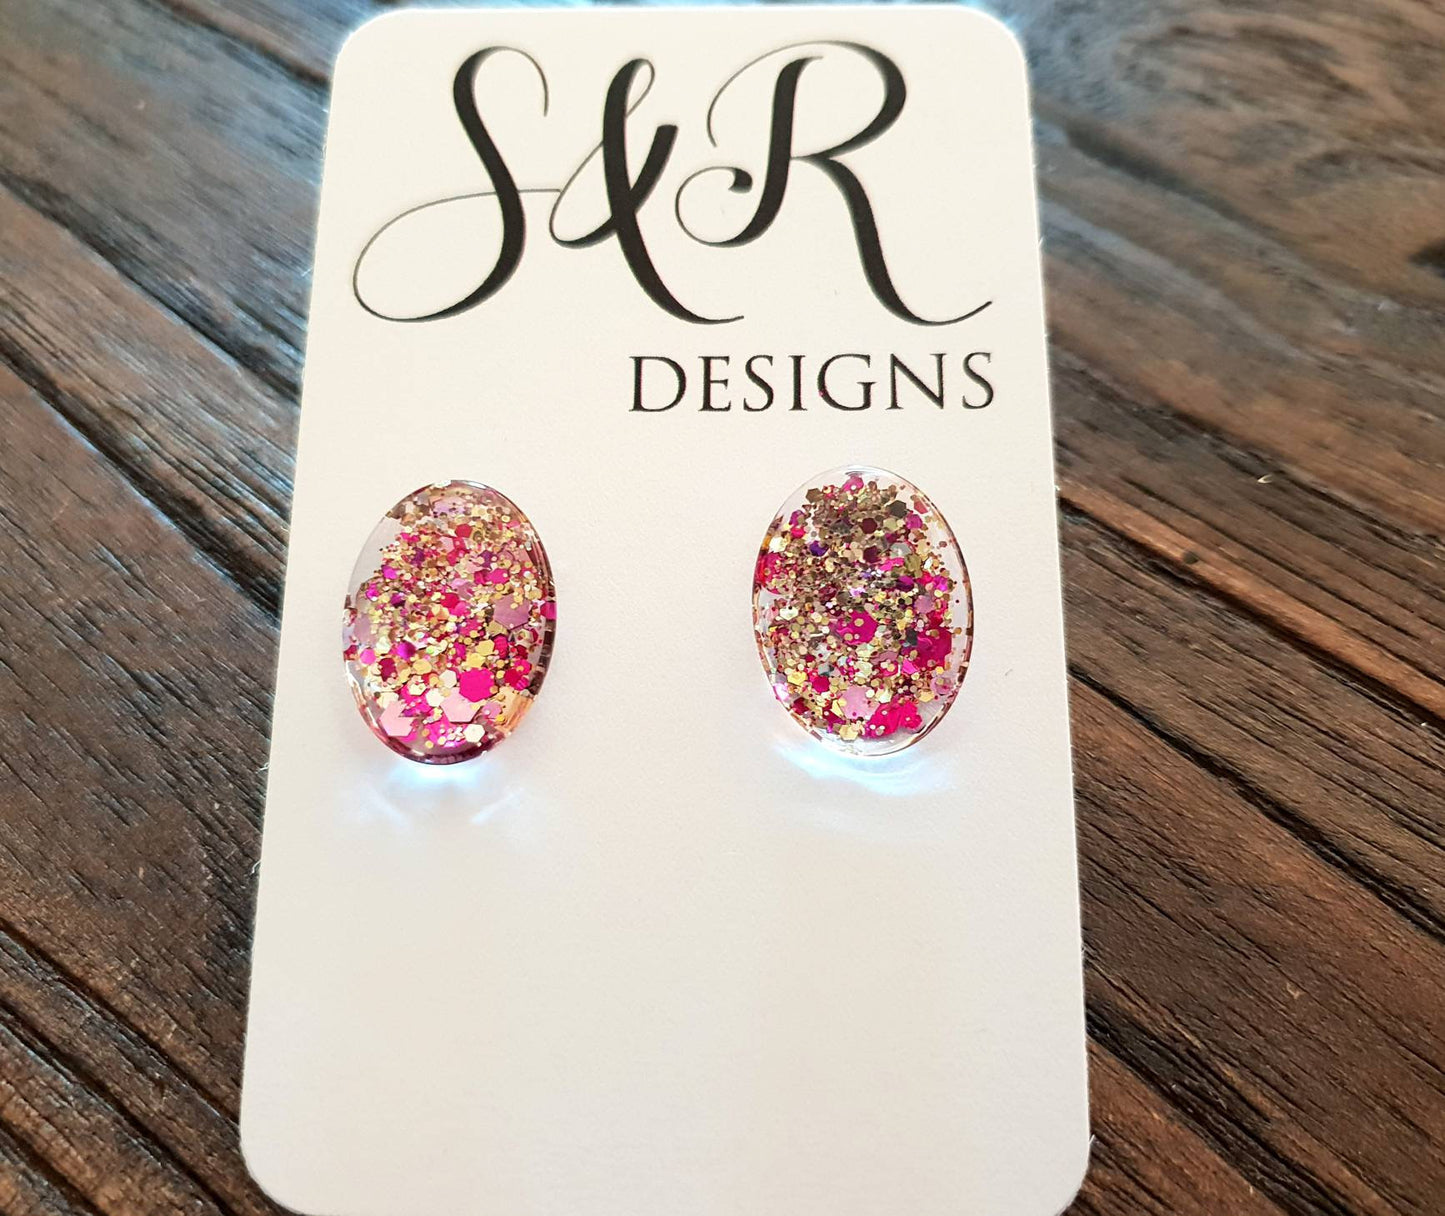 Oval Glass Glitter Resin Stud Earrings made of Stainless Steel, Gold Pink Glitter Earrings